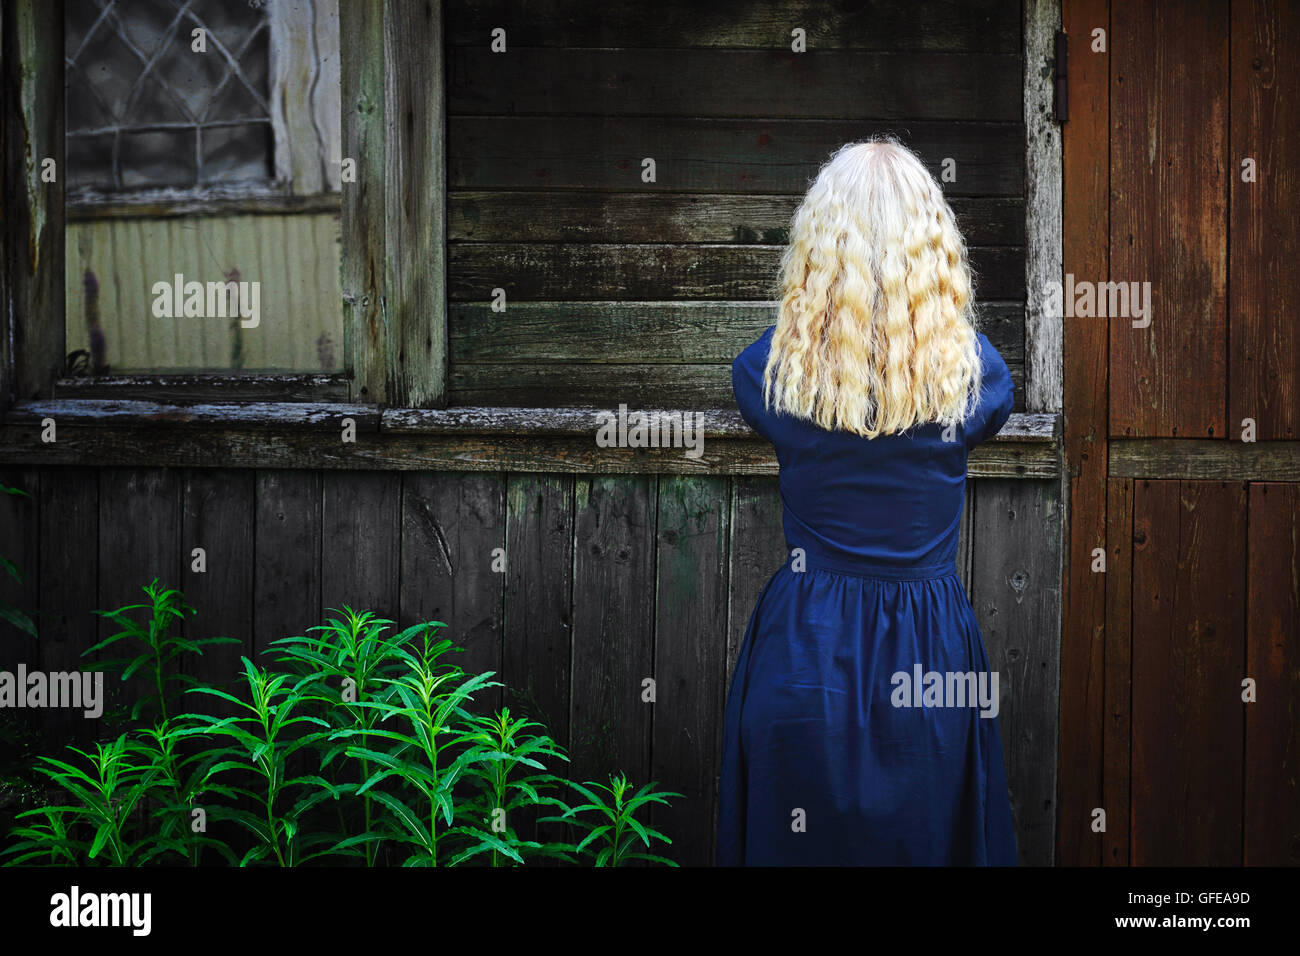 Fille avec de longs cheveux blonds dans la robe bleue debout à l'ancien hangar en bois Banque D'Images